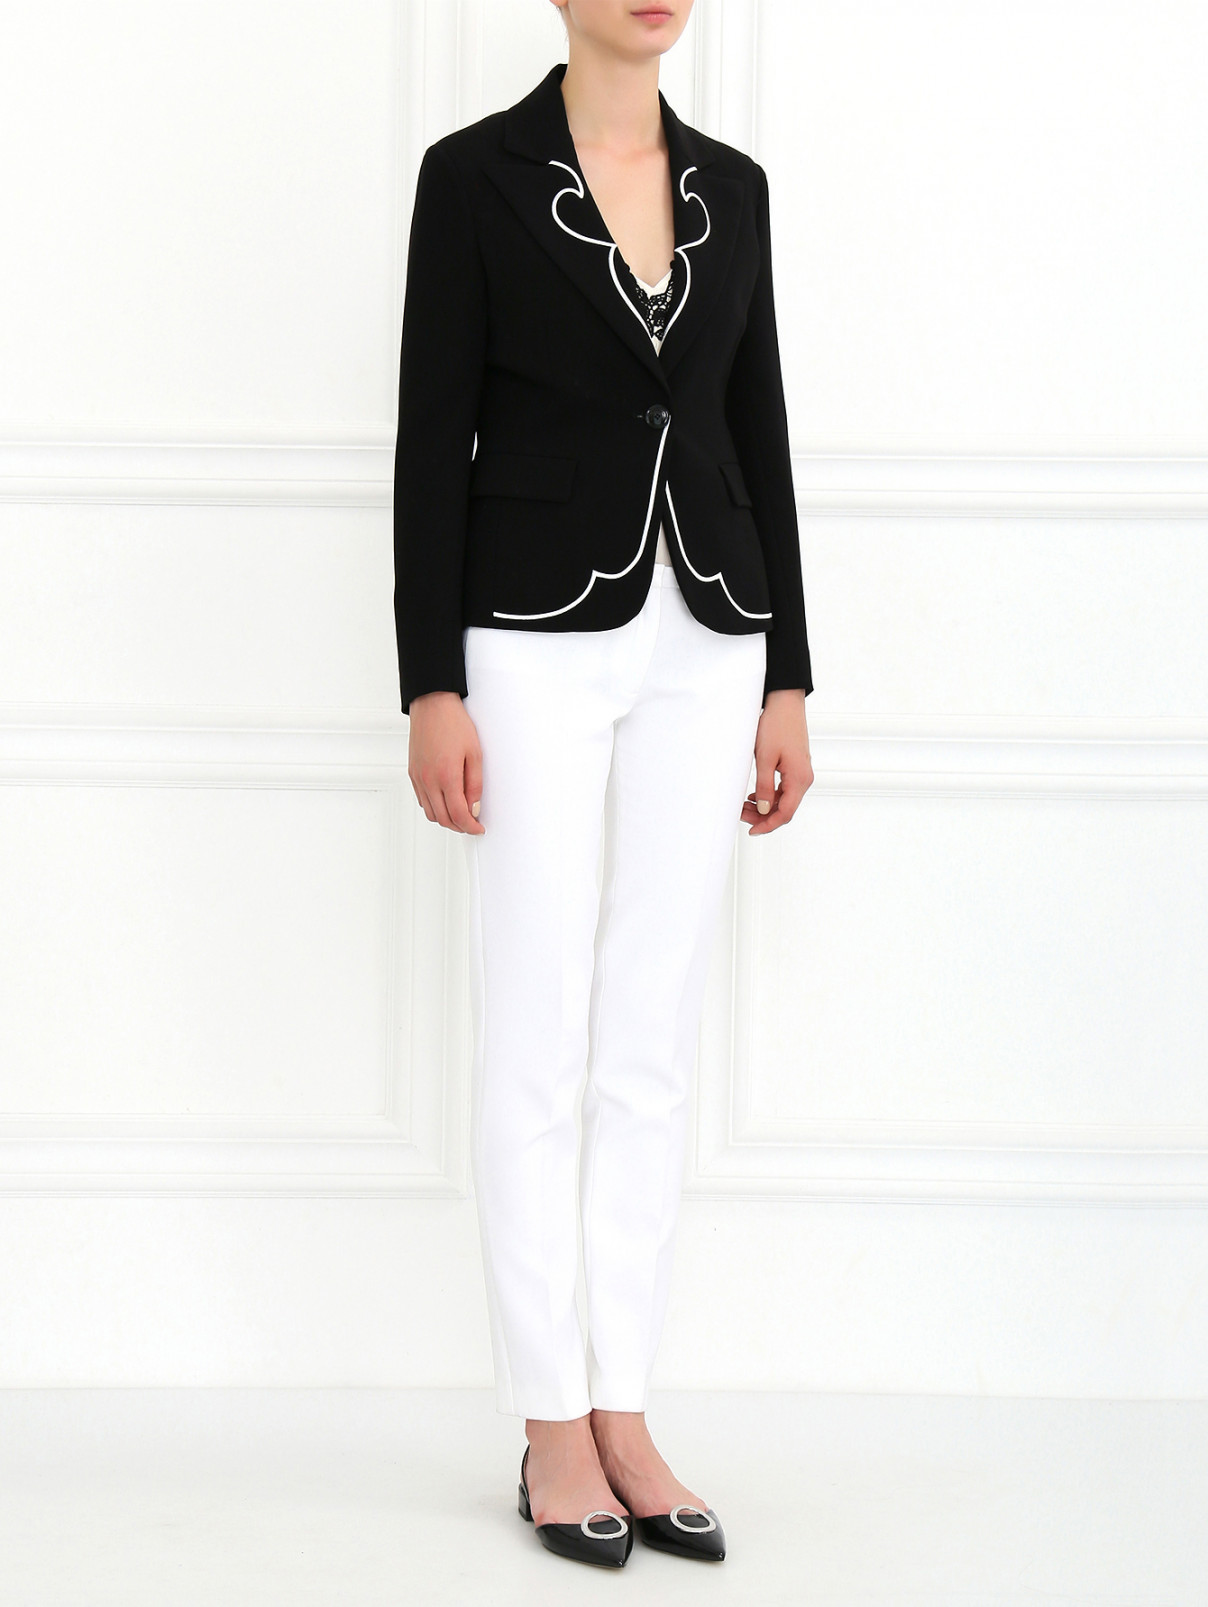 Жакет с вышивкой Moschino Cheap&Chic  –  Модель Общий вид  – Цвет:  Черный